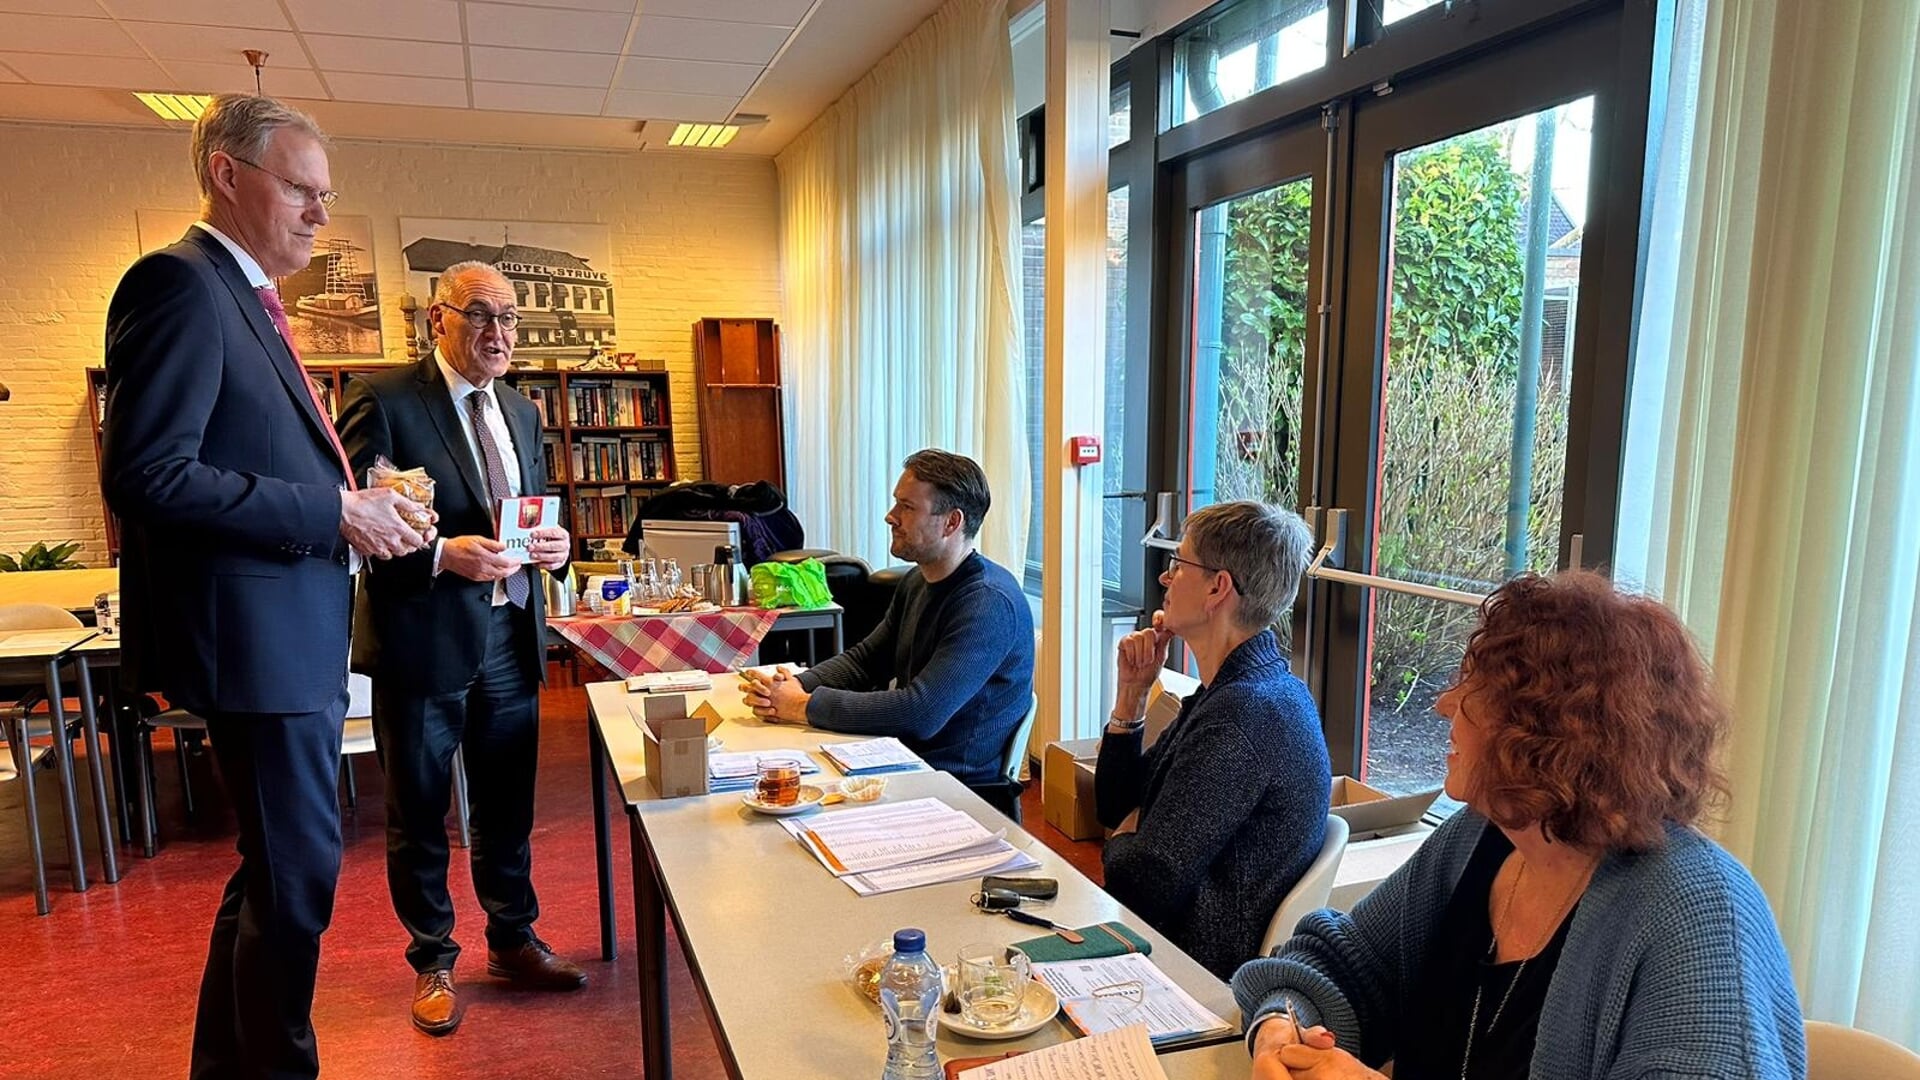 Burgemeester Adriaan Hoogendoorn en dijkgraaf Geert-Jan ten Brink brengen chocolaatjes mee voor de leden van het stembureau. (foto: gemeente Midden-Groningen)